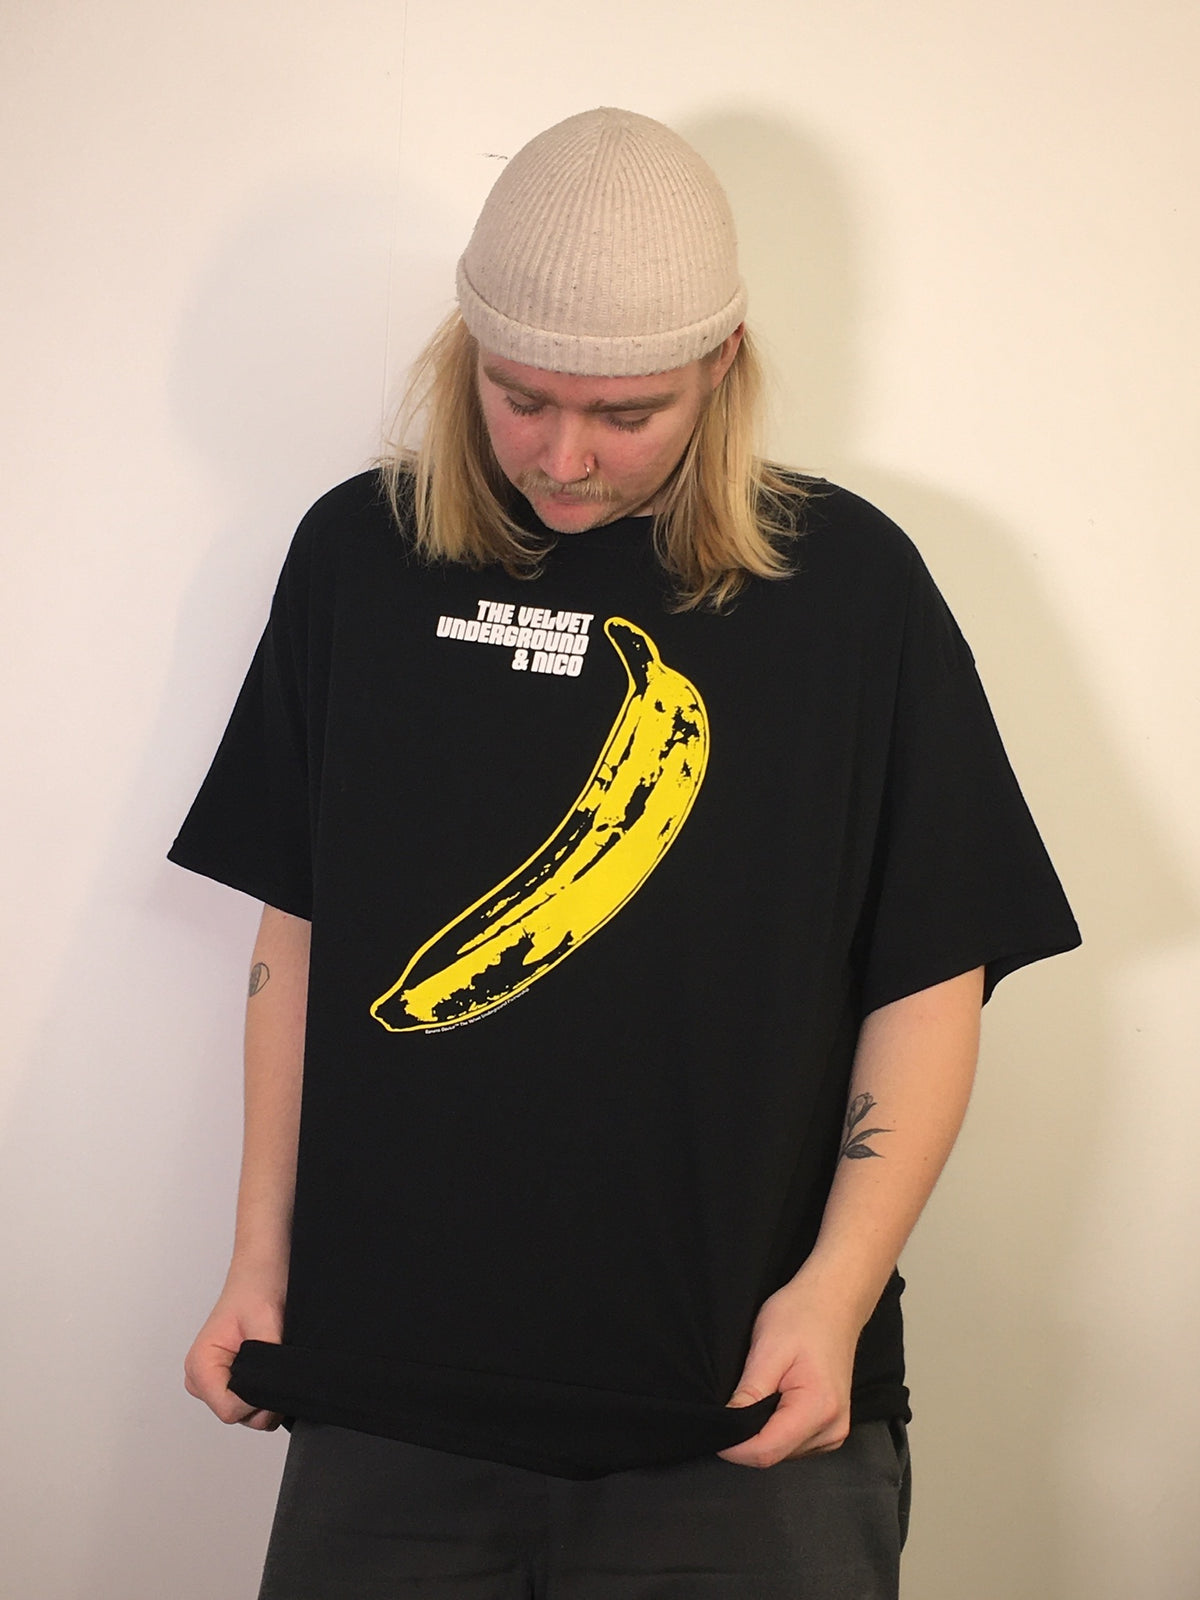 Velvet Underground Banana Black Tee